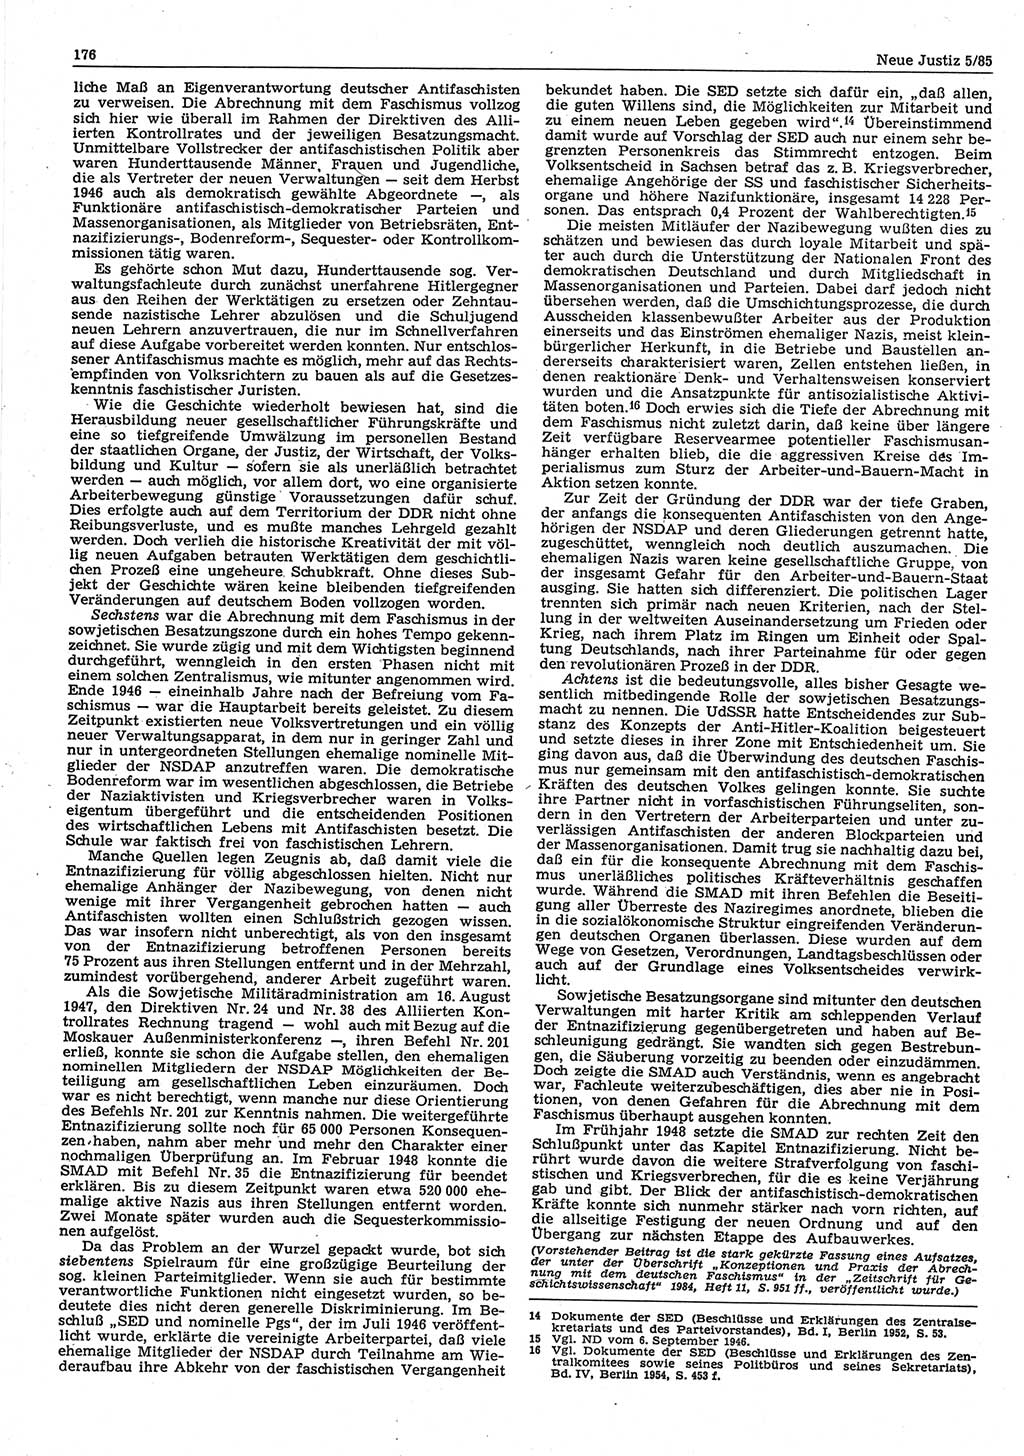 Neue Justiz (NJ), Zeitschrift für sozialistisches Recht und Gesetzlichkeit [Deutsche Demokratische Republik (DDR)], 39. Jahrgang 1985, Seite 176 (NJ DDR 1985, S. 176)